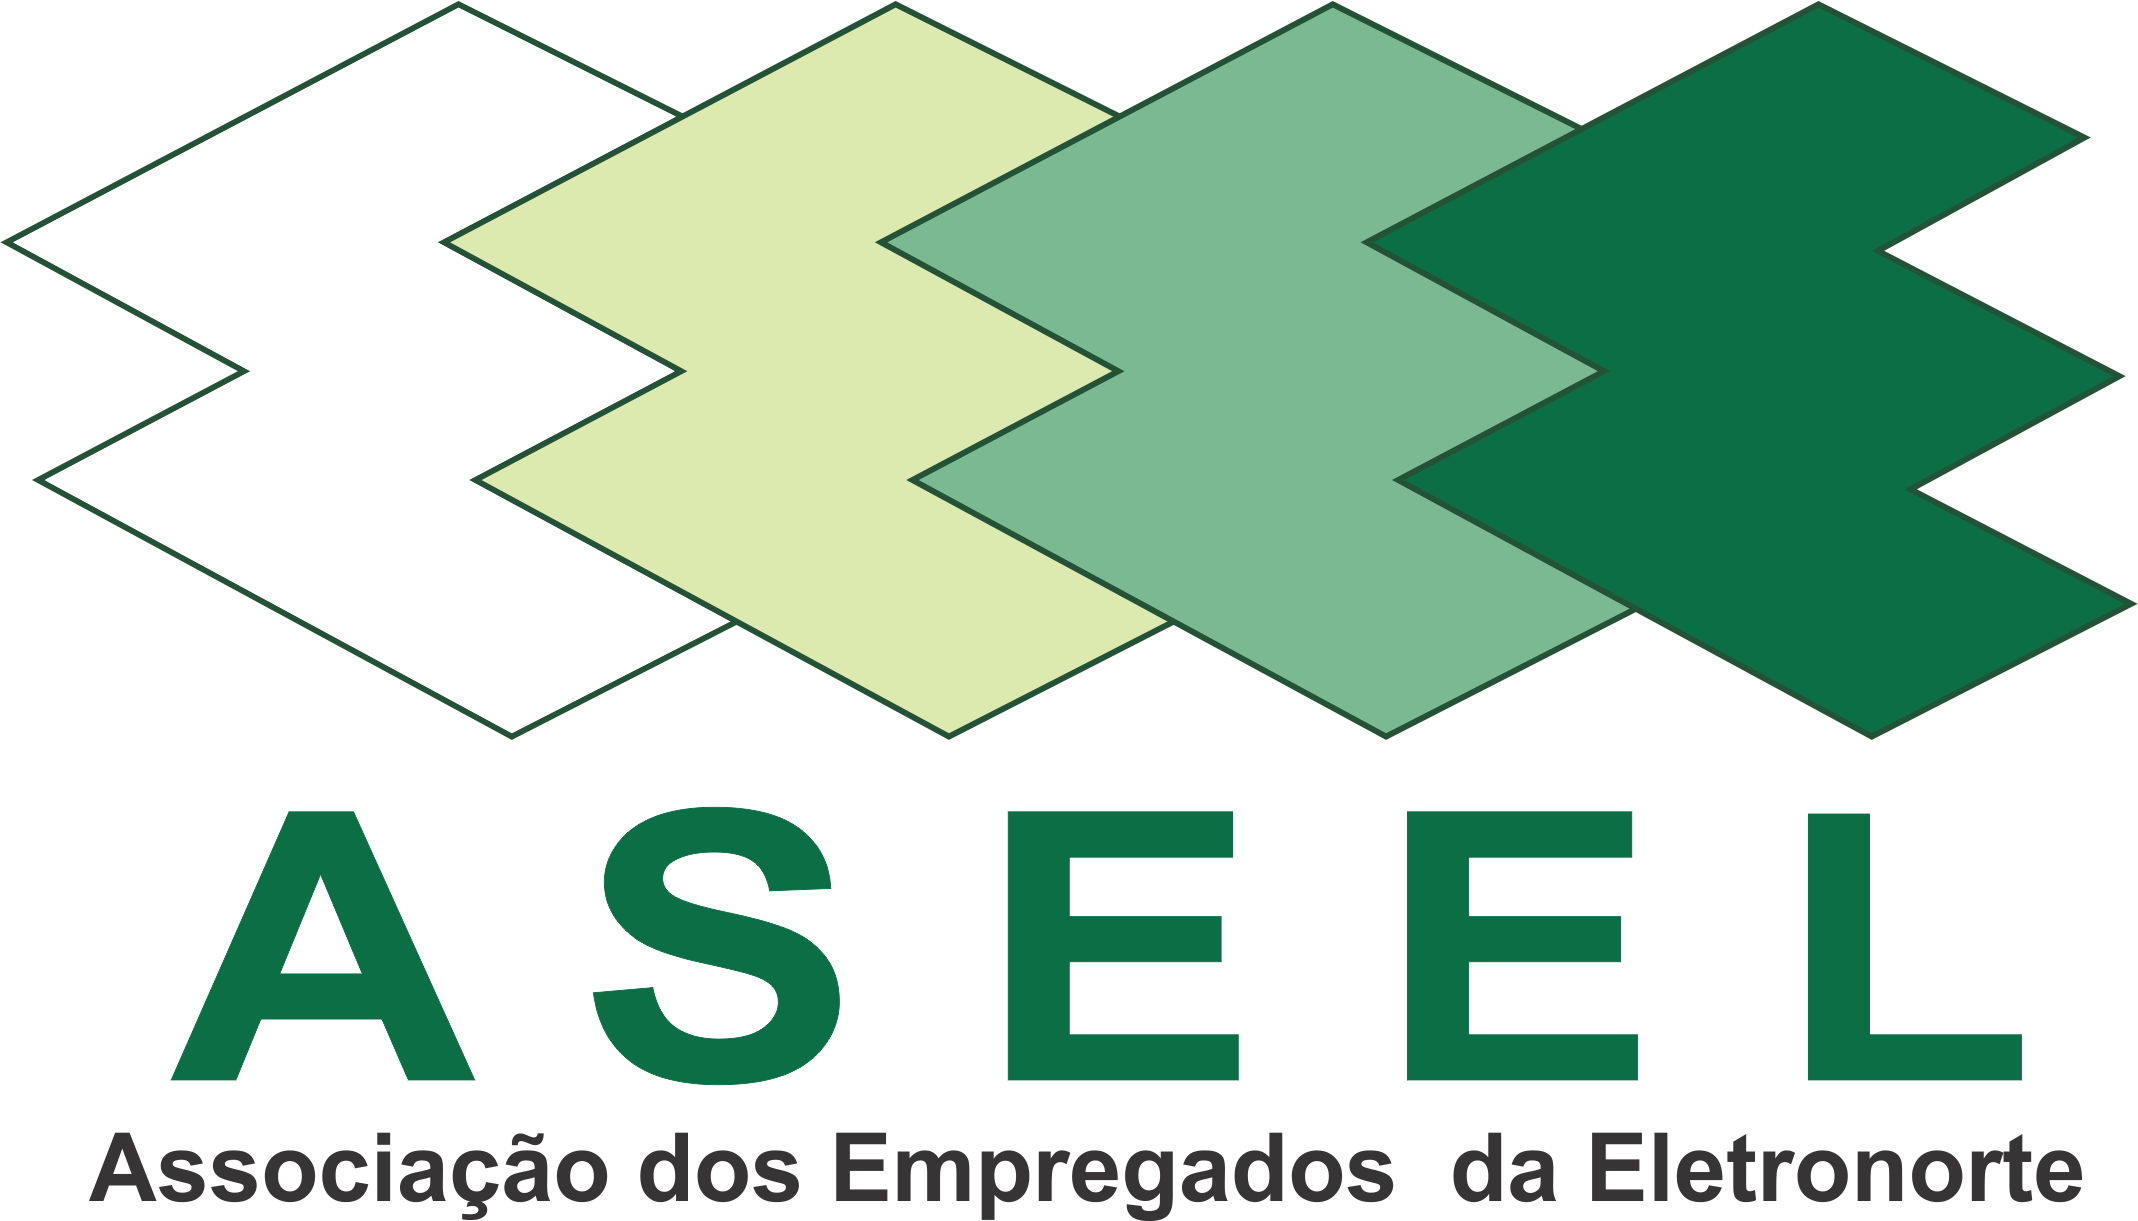 (c) Aseel.com.br